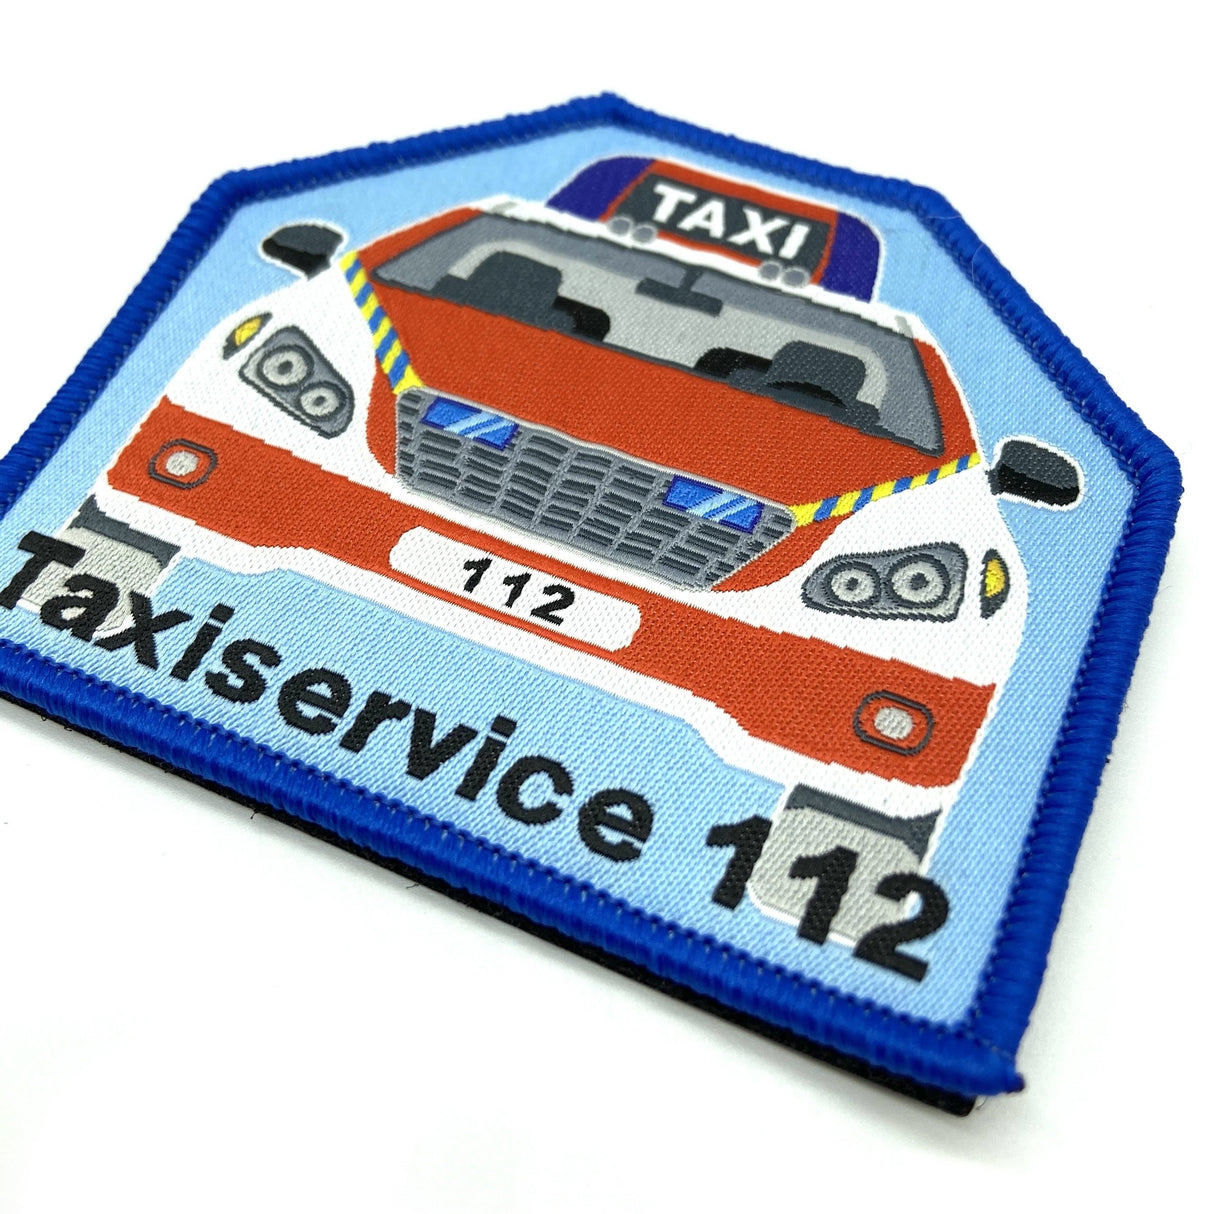 112 Taxi Textil Patch